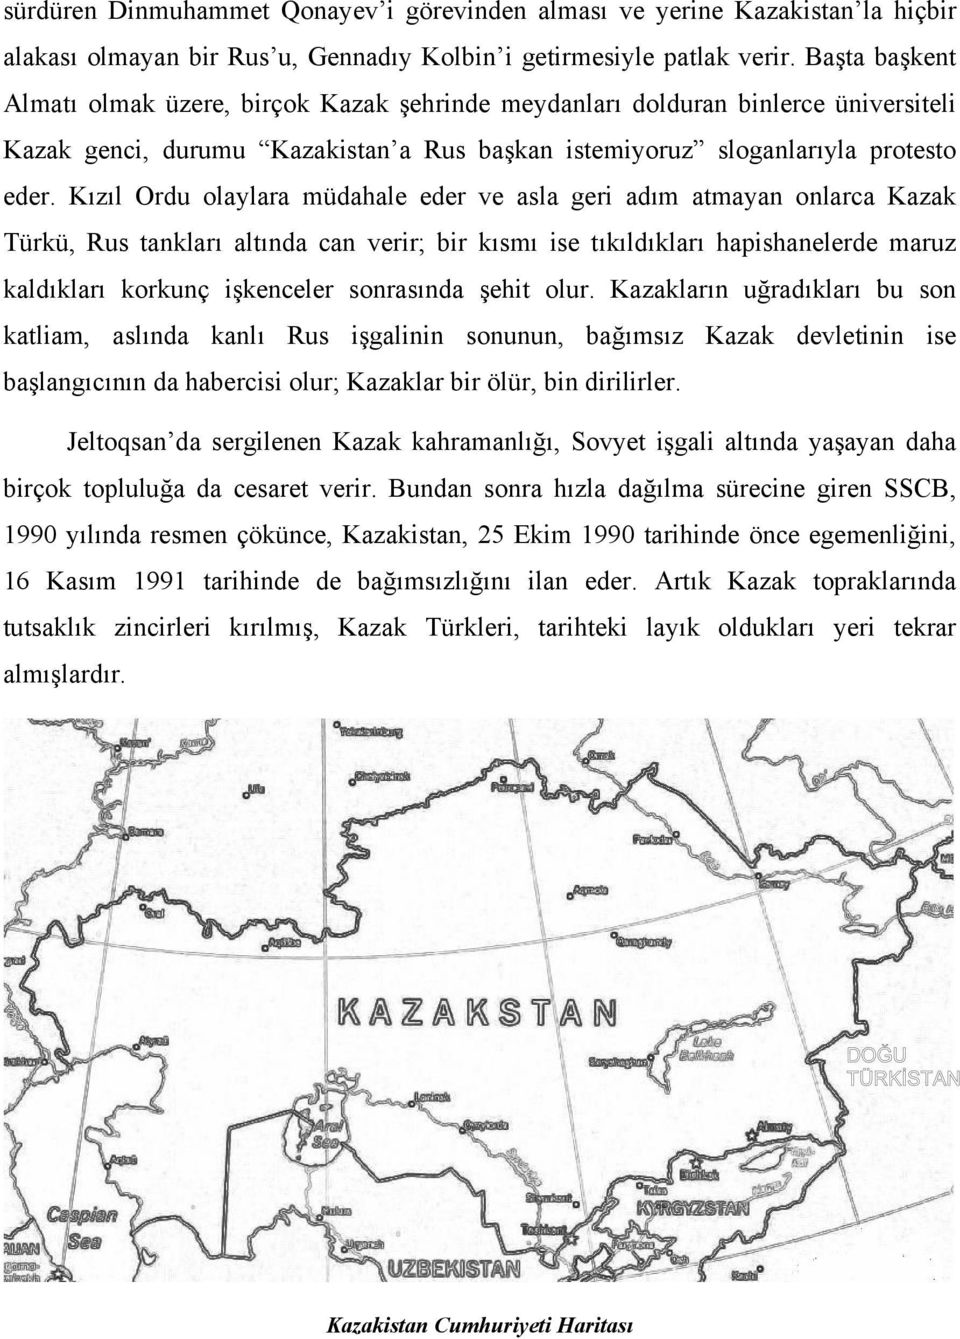 Kızıl Ordu olaylara müdahale eder ve asla geri adım atmayan onlarca Kazak Türkü, Rus tankları altında can verir; bir kısmı ise tıkıldıkları hapishanelerde maruz kaldıkları korkunç işkenceler